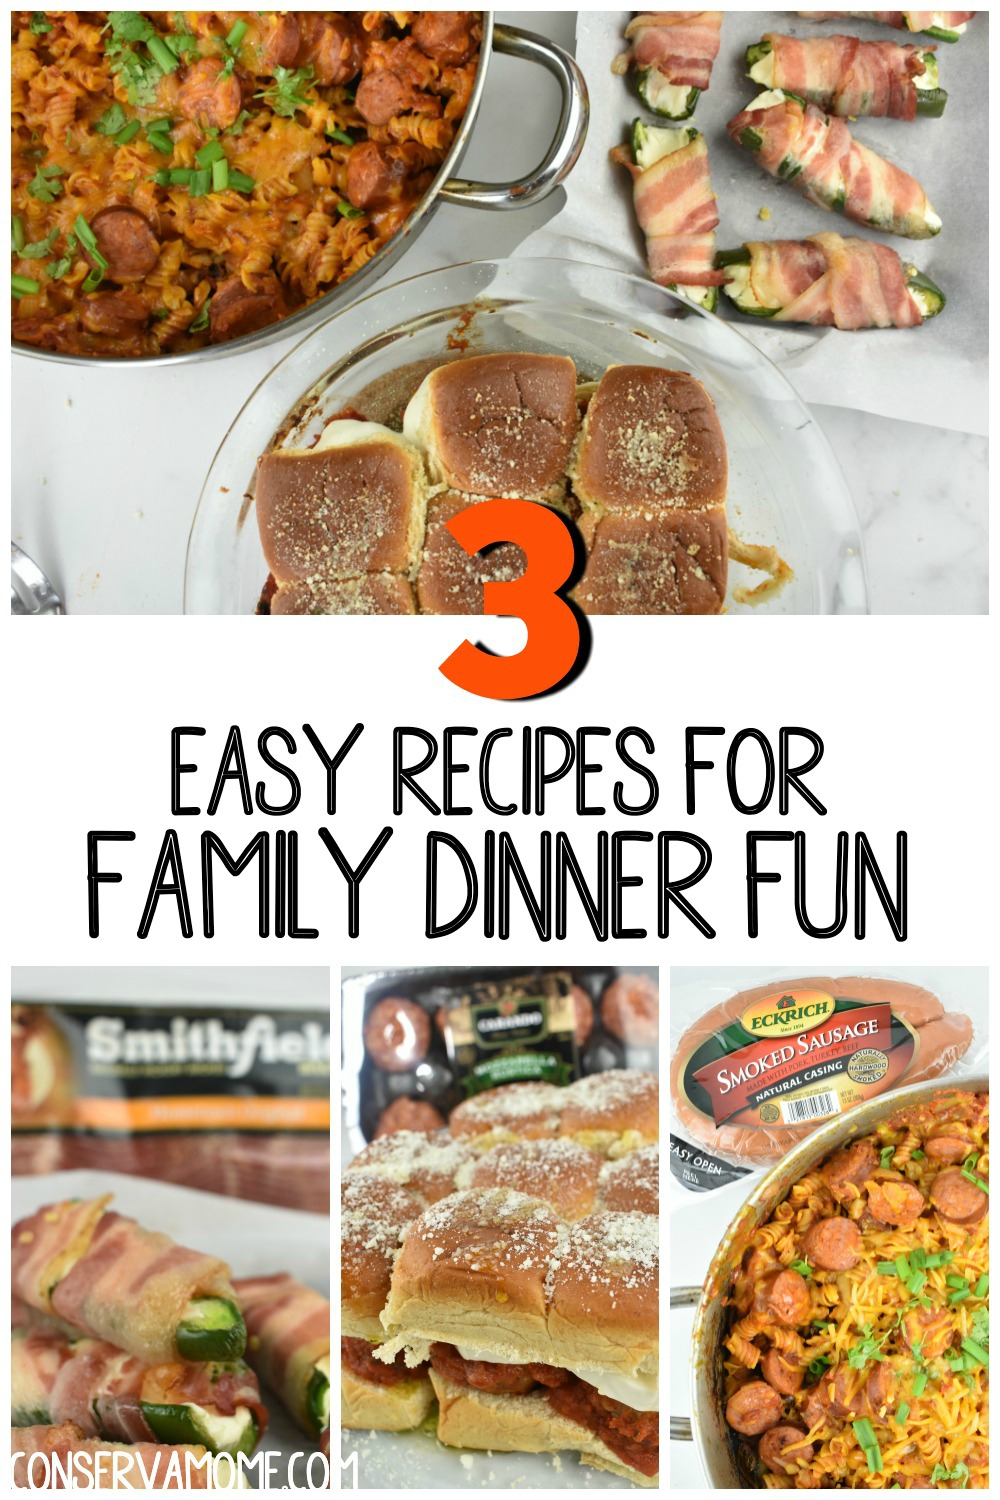 3 Easy Recipes For Family Dinner Fun ConservaMom